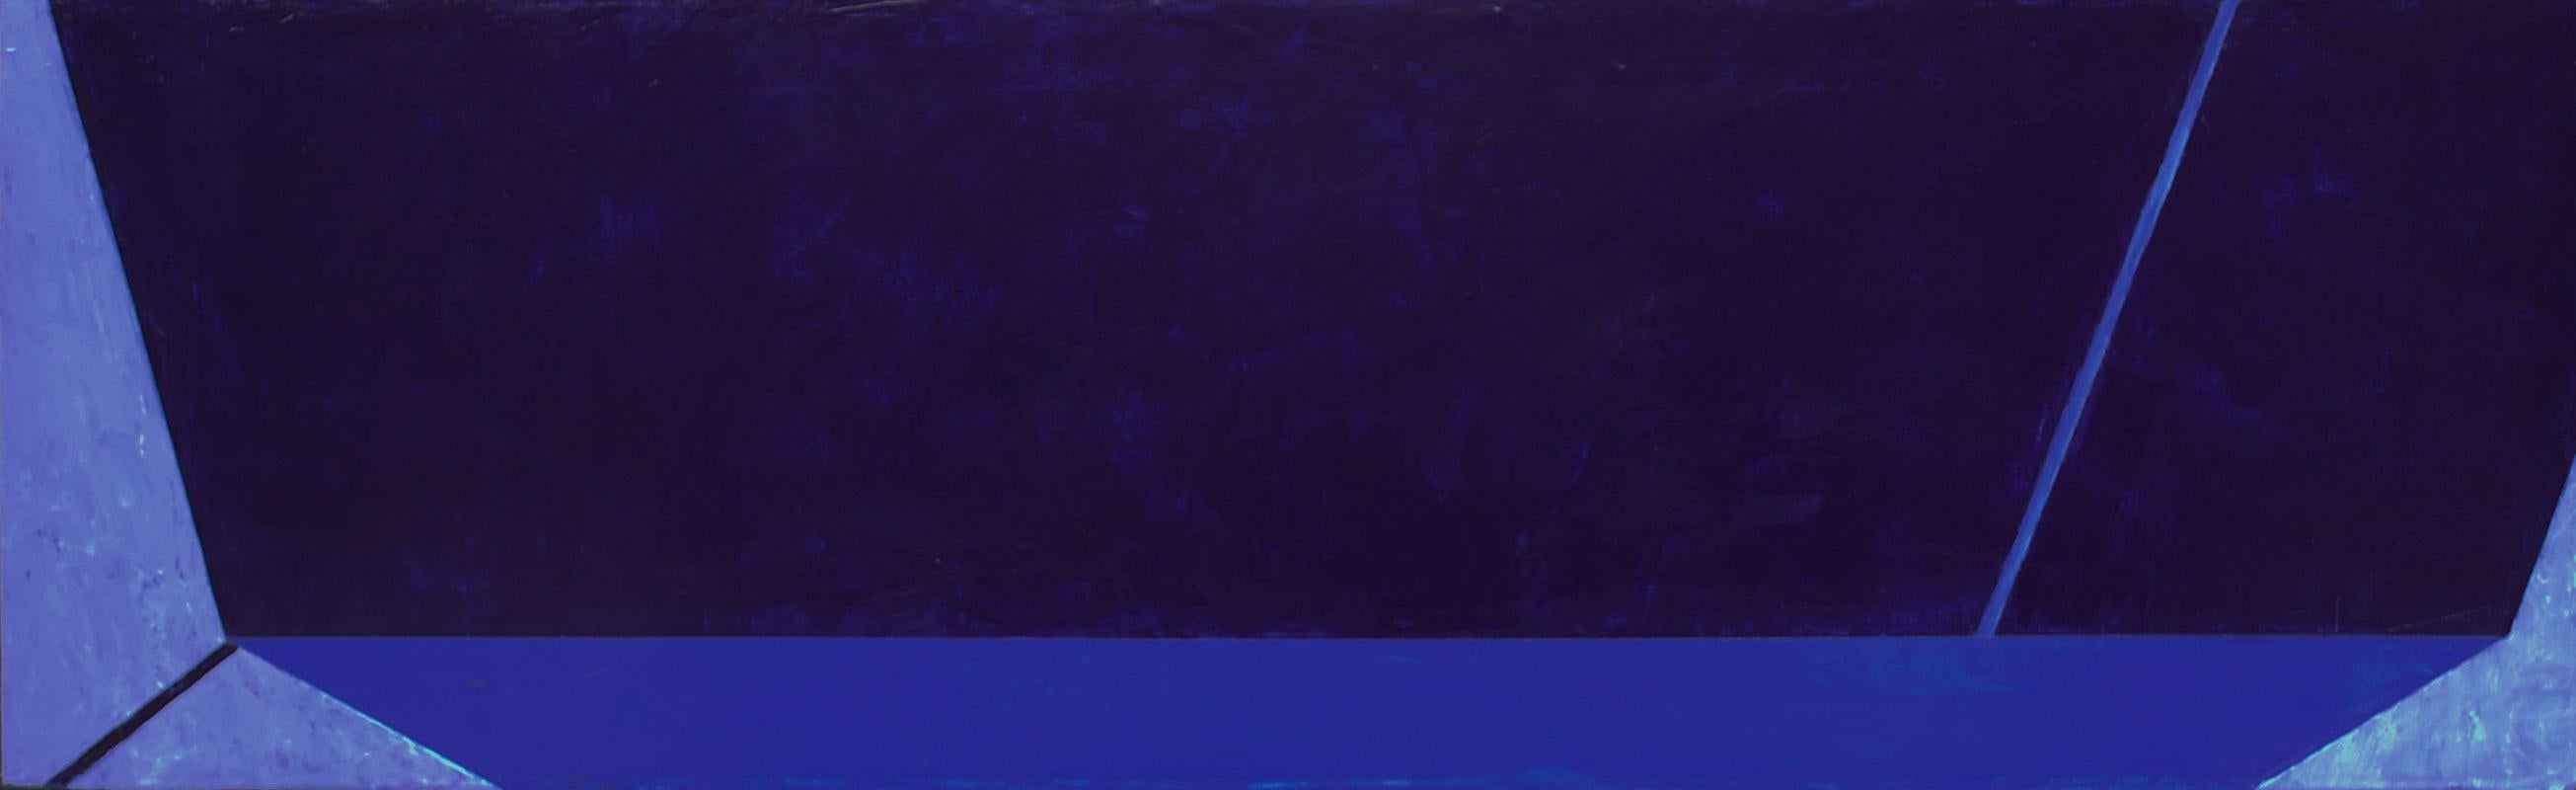 Macyn Bolt, Dark Pool II, acrylic on canvas, Minimalist, 18 x 60, 2018 For Sale 5